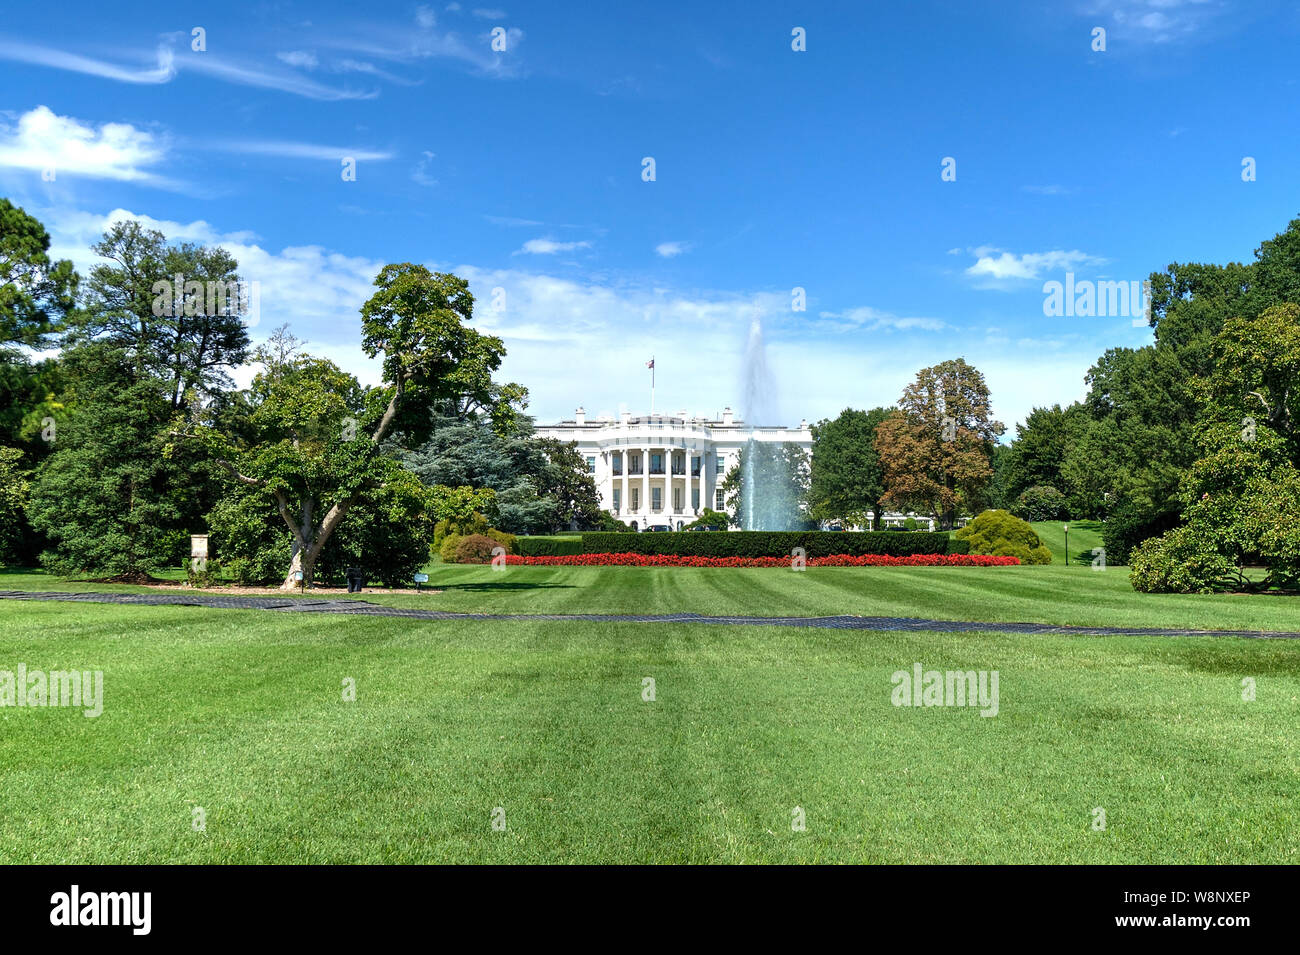 La Casa Blanca, residencia oficial del Presidente de los Estados Unidos en Washington, D.C., vista panorámica de la fachada sur pórtico. Foto de stock